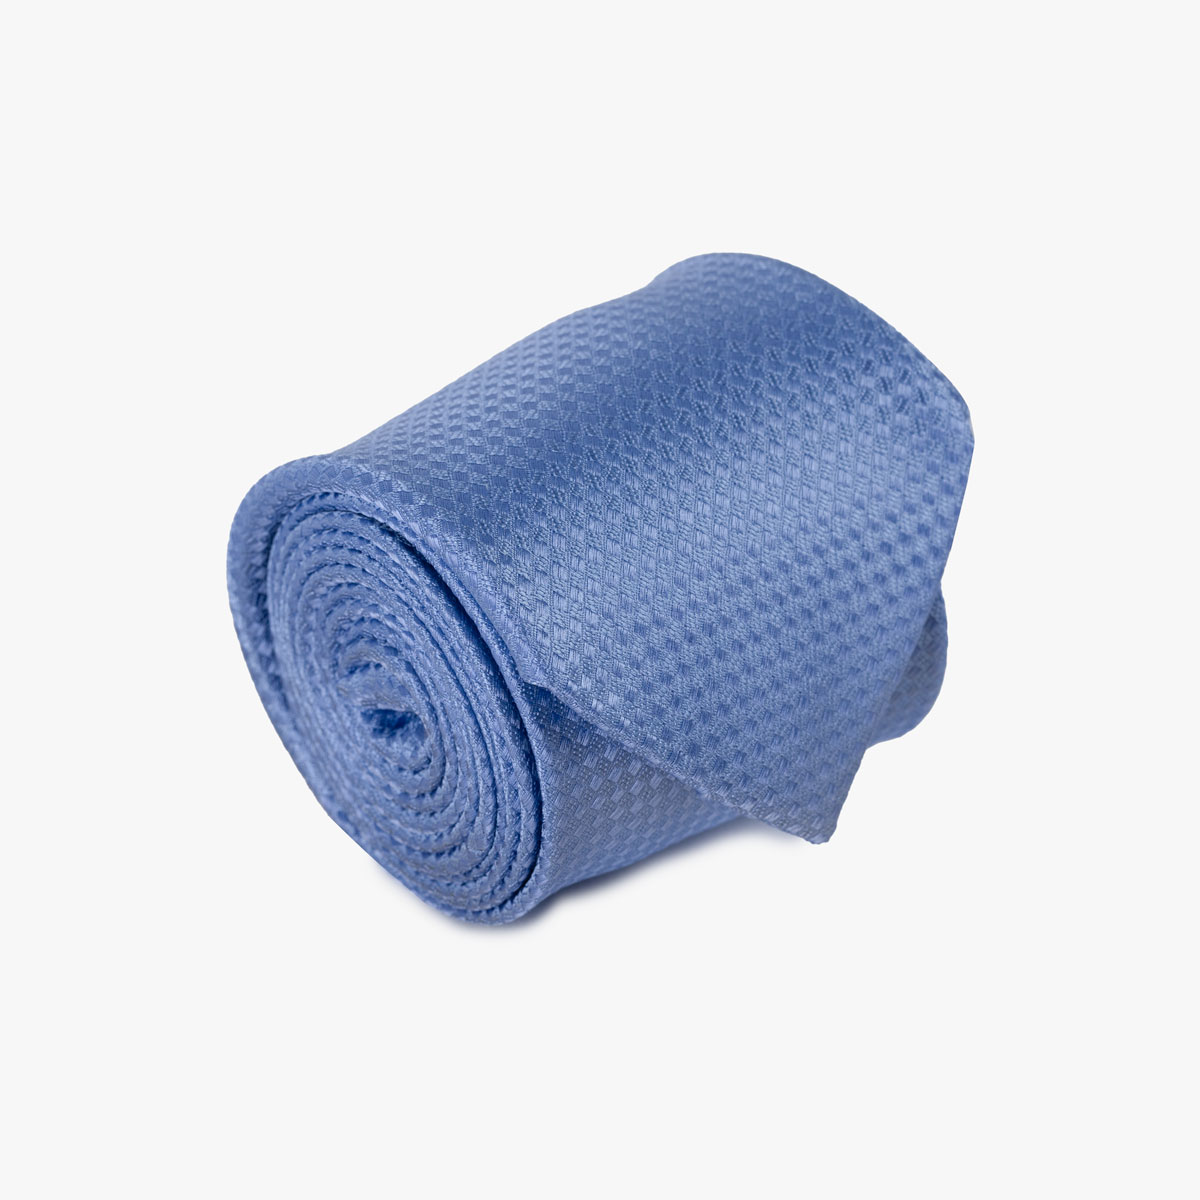 Krawatte mit Struktur in hellblau